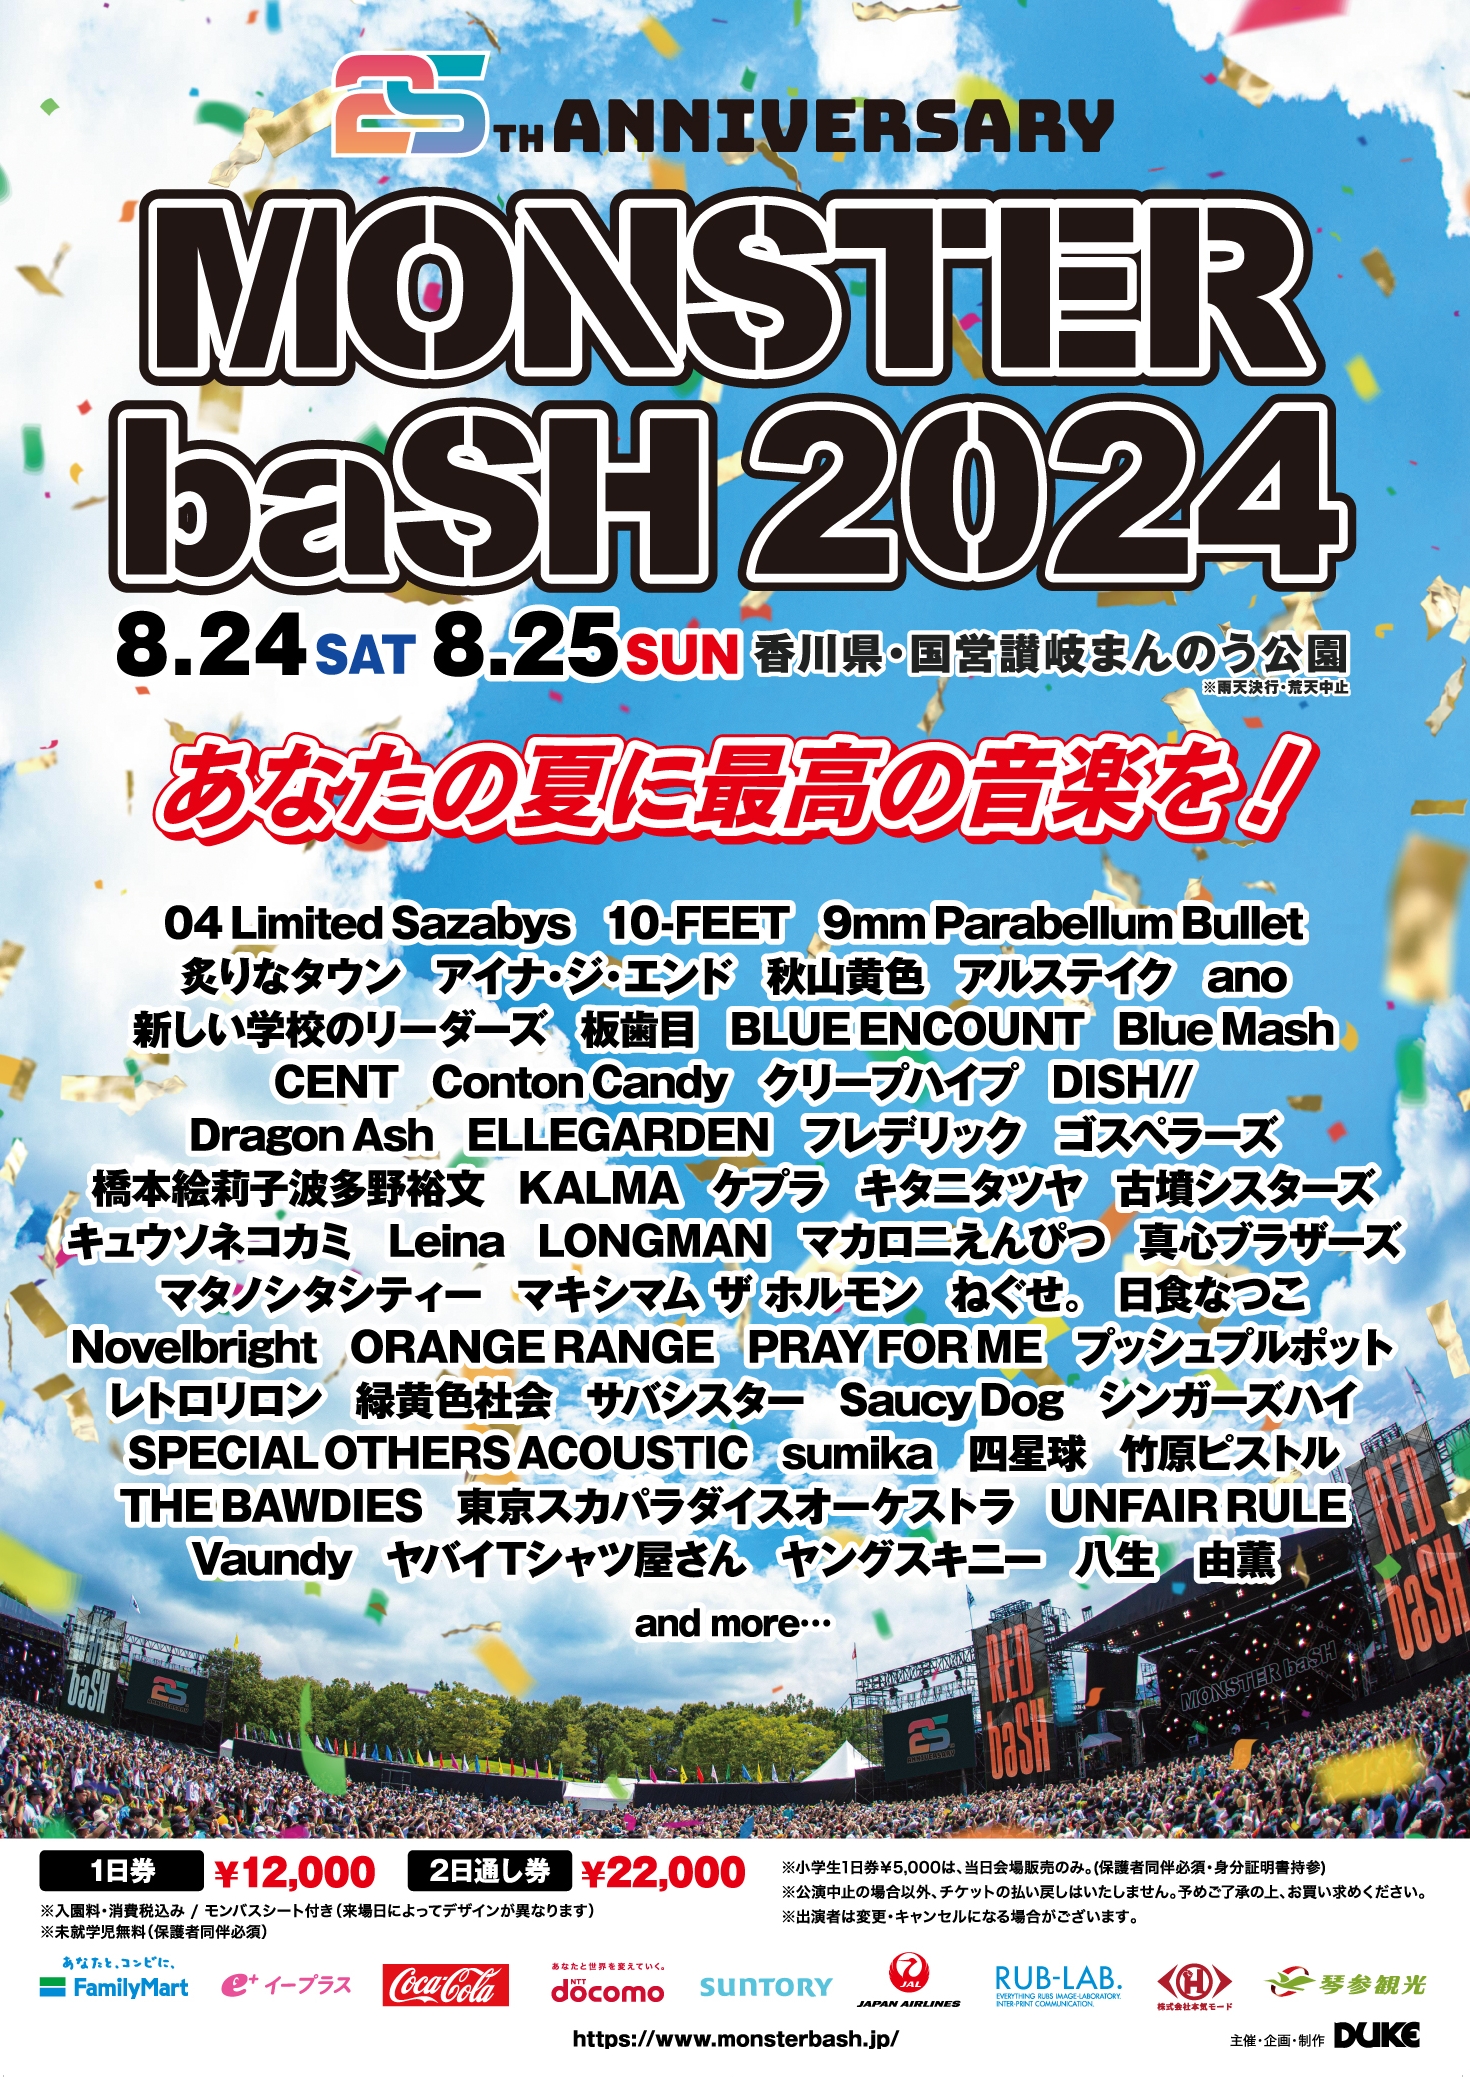 【香川】MONSTER baSH 2024 (国営讃岐まんのう公園) ※出演日は後日発表